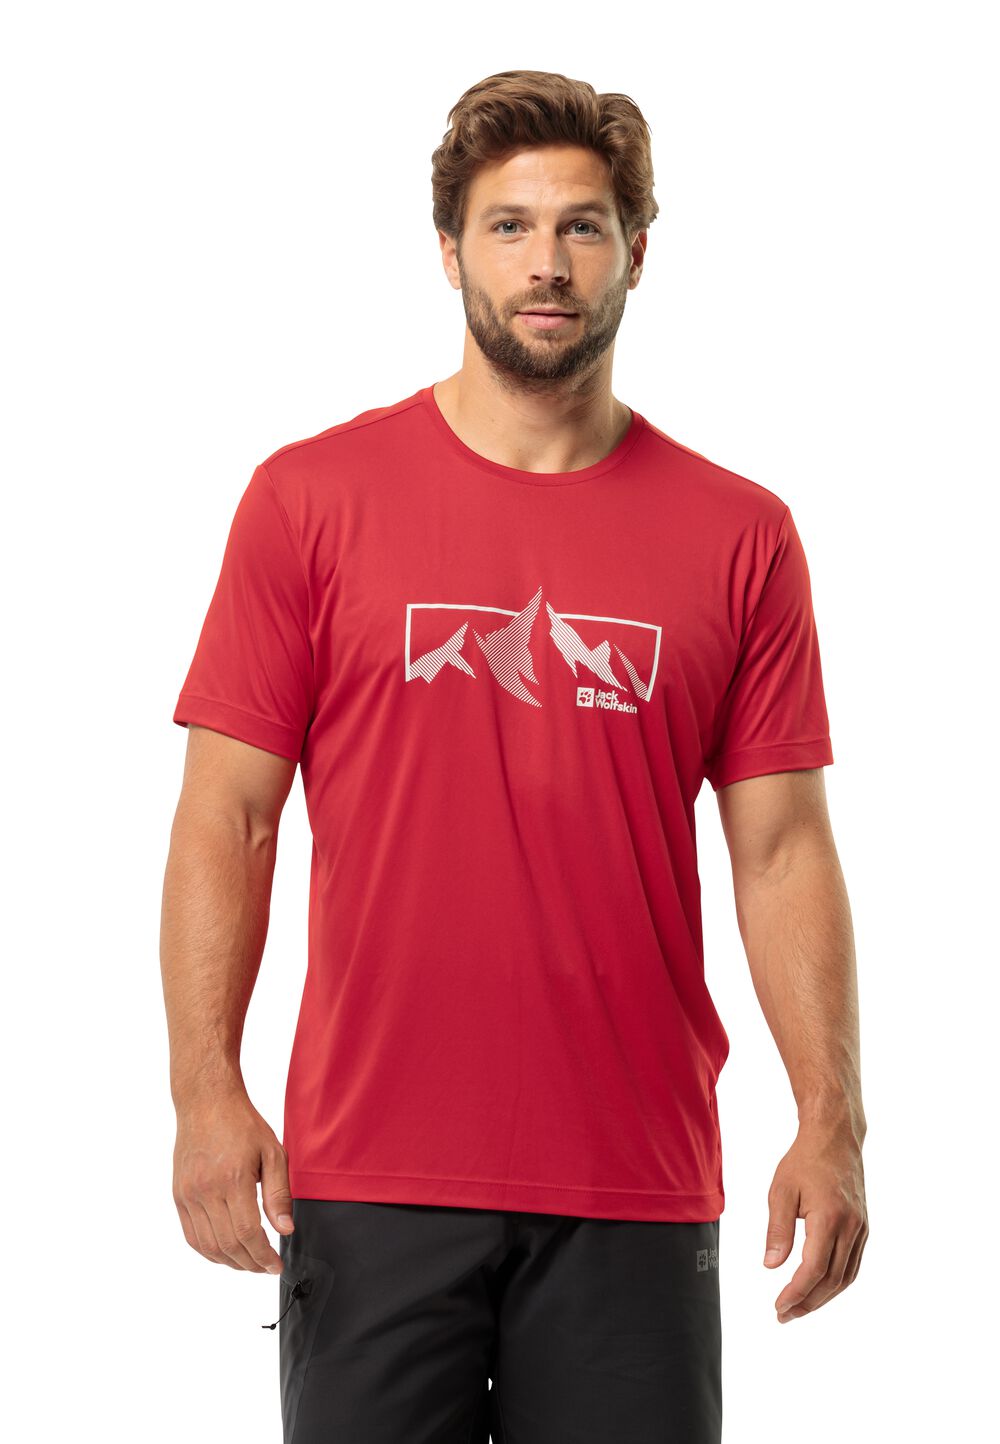 Jack Wolfskin Funktionsshirt Herren Peak Graphic T-Shirt Men XXL rot red glow von Jack Wolfskin